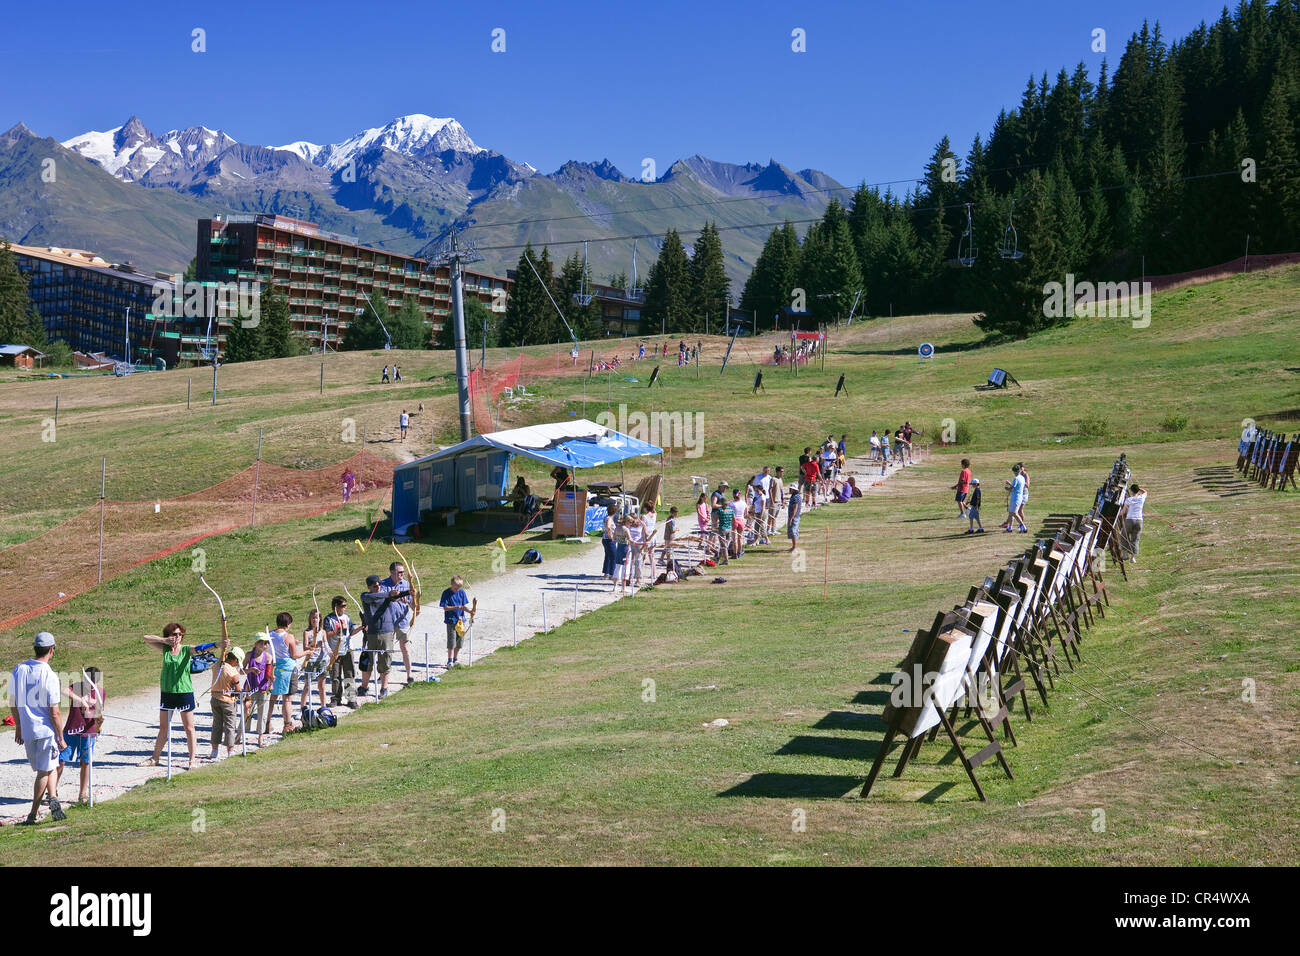 France, Savoie Les Arcs 1800, archery with view on Mont Blanc (4810m) massif de la Vanoise Stock Photo